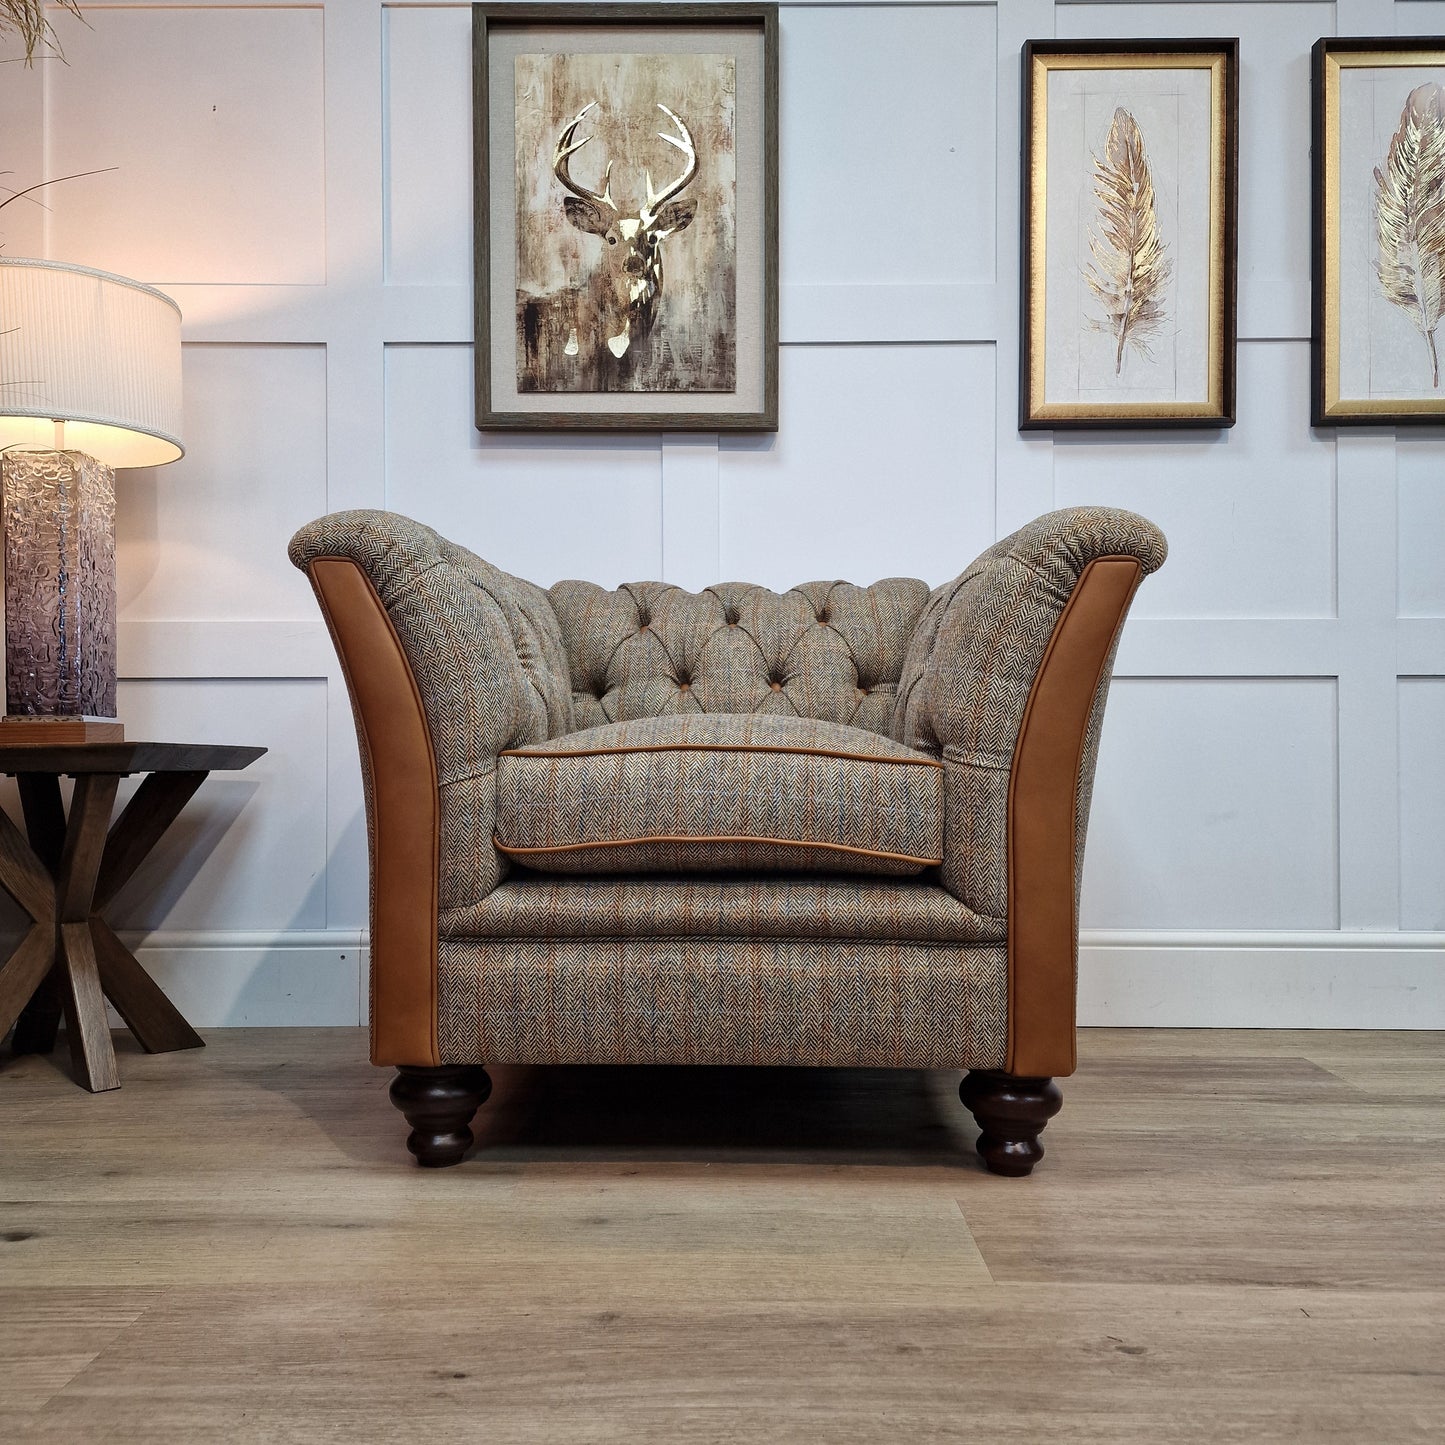 Tiree Harris Tweed Armchair - Brown And Beige Herringbone - Rydan Interiors